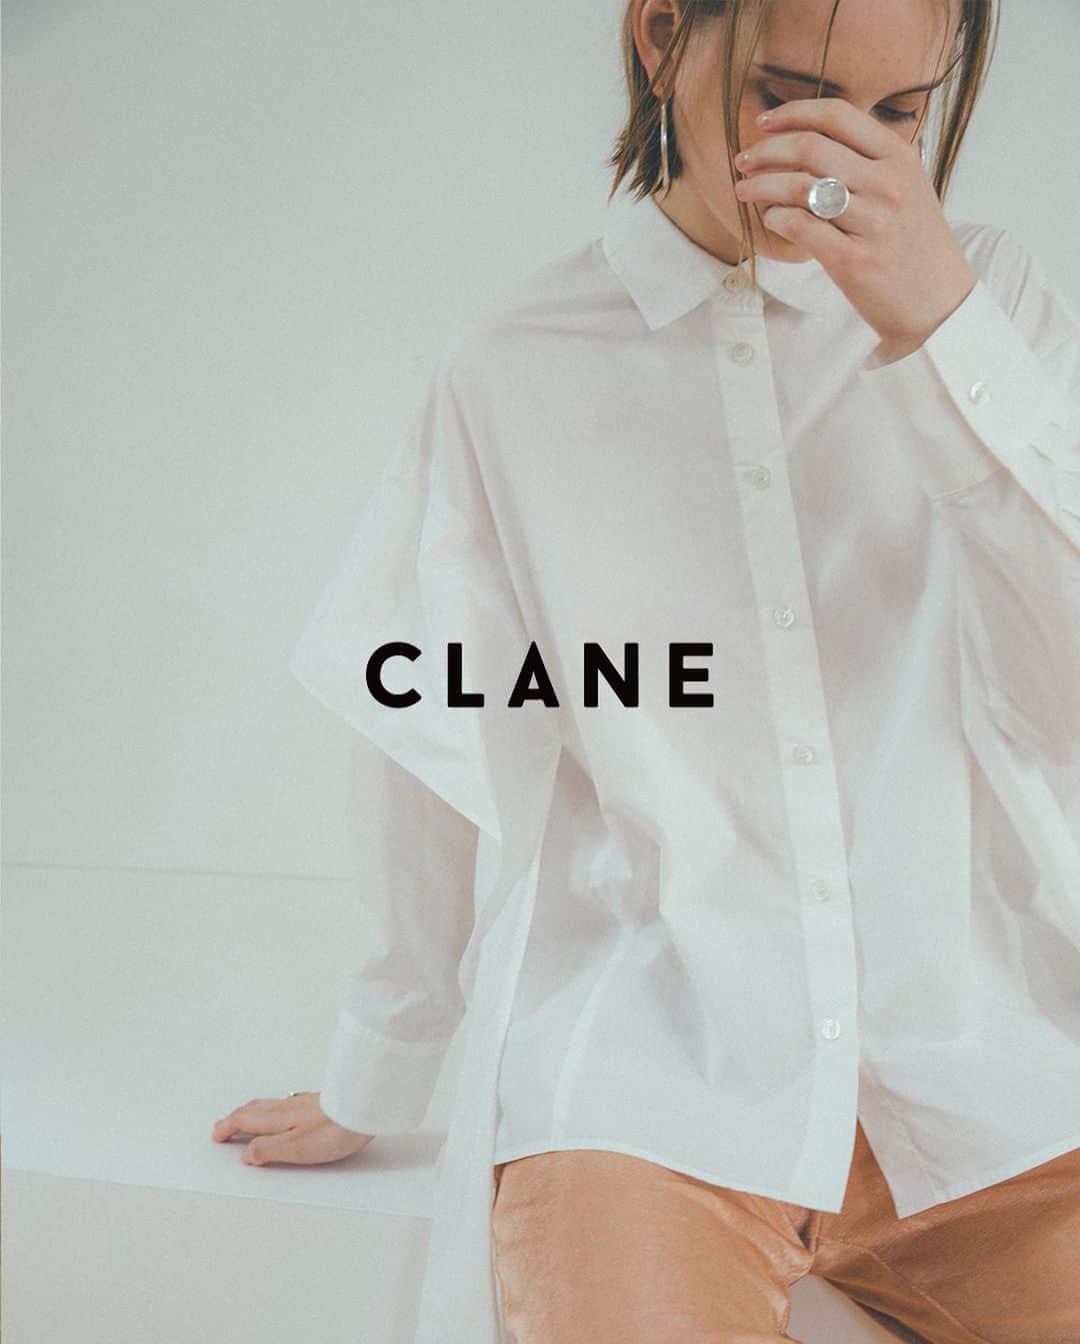 ARKnetsのインスタグラム：「《 CLANE 》﻿ ﻿ 2020 Autumn & Winter Collection﻿ ﻿ ■BRAND/CLANE(クラネ)﻿ ﻿ 「 O R I G I N A L S T A N D A R D 」「STANDARD」に現代的な柄、素材、デザインを取り入れ新しいフォルムを表現。「特別な一枚」を重視し、長く愛用していただける洋服を提案します。﻿ ﻿ ﻿ 【取り扱い店舗 】﻿ @dearbyark﻿ ﻿ ﻿ ■商品や通信販売に関しまして、ご不明な点がございましたらお気軽にお問い合わせください。﻿ ----------------------------------﻿ 【お問い合わせ】﻿ ARKnetsコールセンター﻿ TEL：028-634-1212 ( 営業時間 12:00～19:00 )﻿ ※店舗へ繋がりにくい場合には、こちらまでお問合せ下さい。﻿ -------------------------------------﻿ #CLANE #クラネ #シャツ #スカート #SKIRT #arknets #dearbyark #セレクトショップ #栃木 #宇都宮 #群馬 #高崎 #埼玉 #越谷 #styling #スタイリング #fashion #ファッション #レディースファッション #coodinate #コーディネイト #20AW #2020aw #2020fw #collection #20fw #fashiongram #outfit #casualstyle #instafashion」